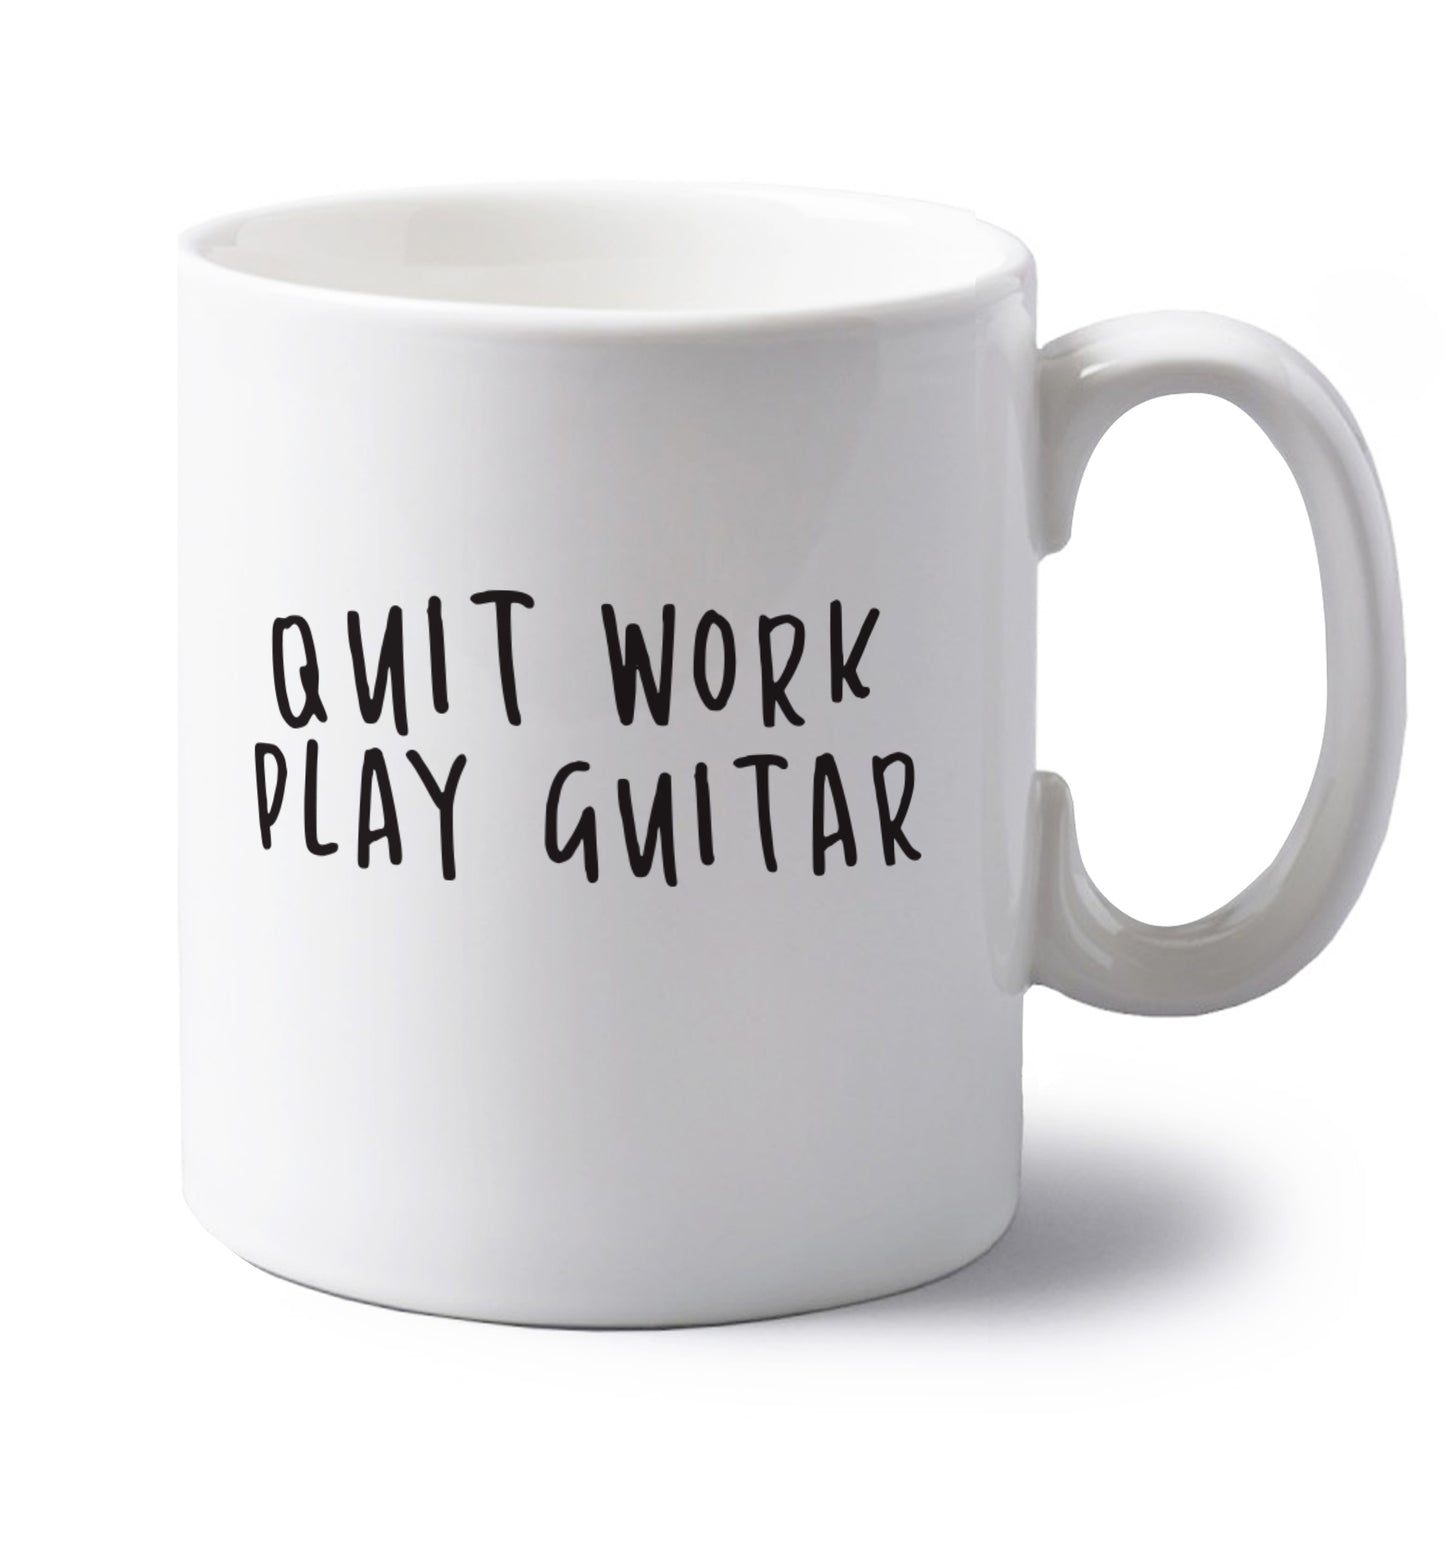 Quit work play guitar left handed white ceramic mug 